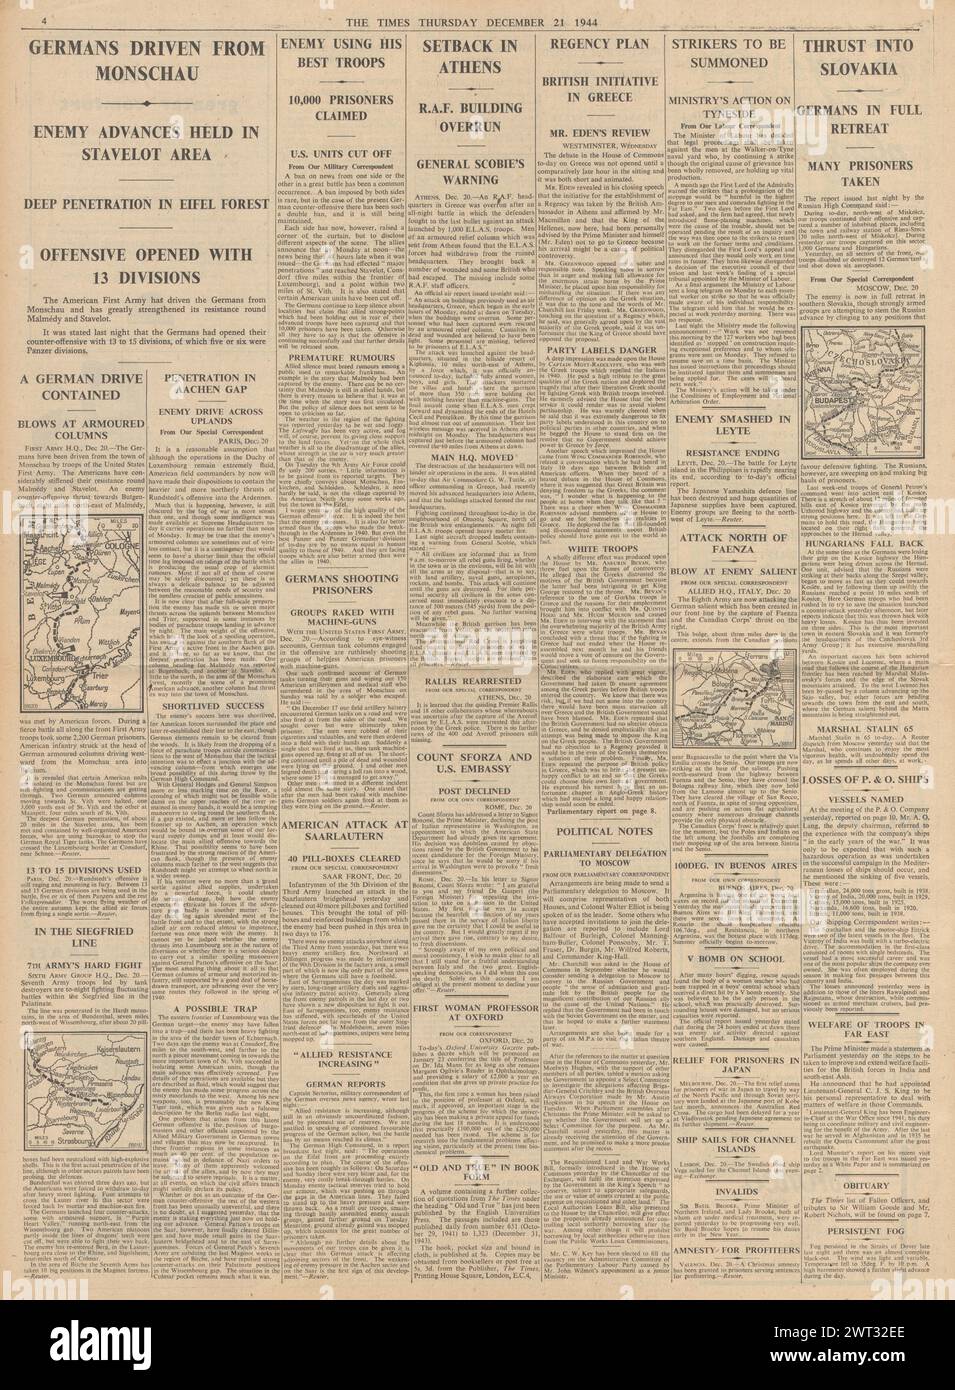 1944 The Times riportava la battaglia delle Ardenne, disordini in Grecia e Armata Rossa in Slovacchia Foto Stock